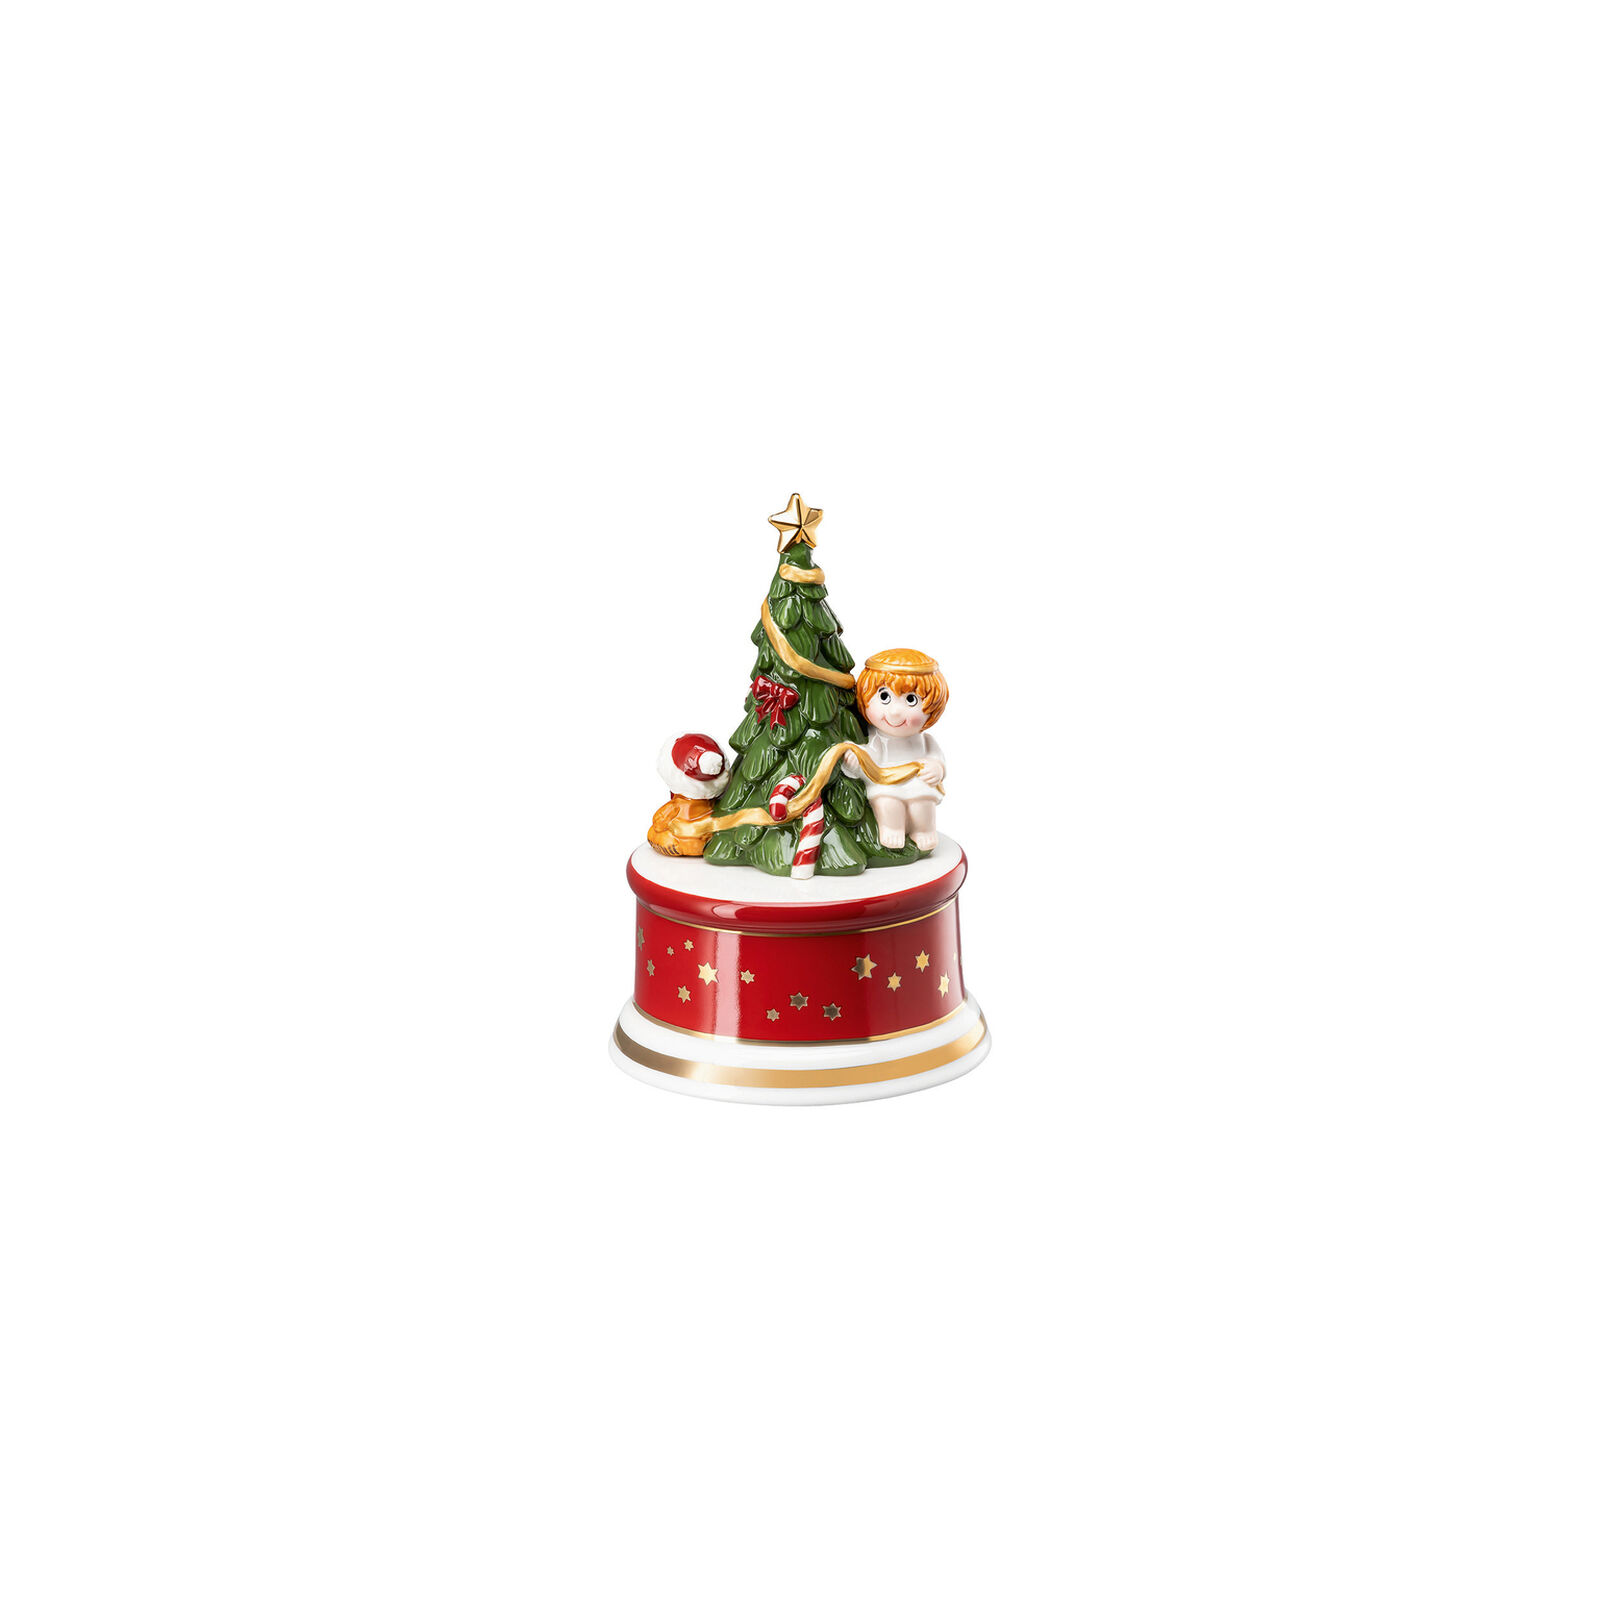 Hutschenreuther Porzellan, Spieluhr Weihnachtslieder klein, Am